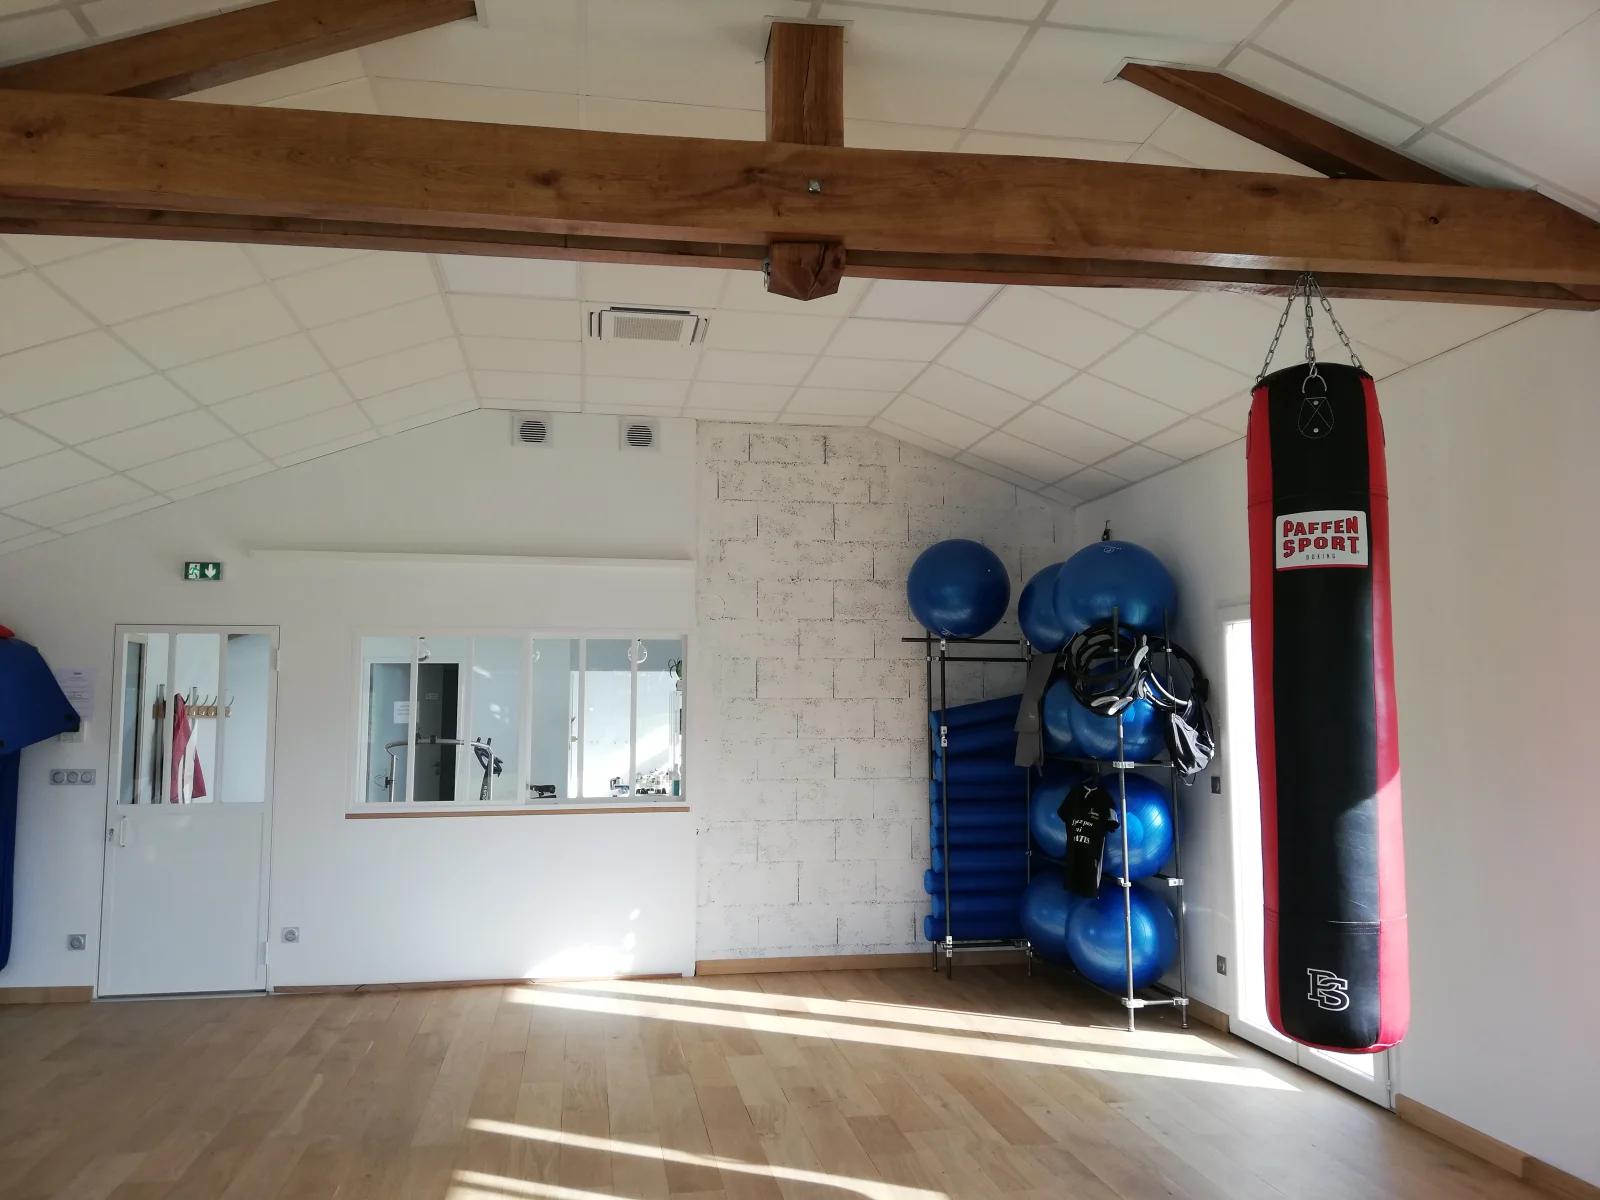 Espacio Salle de sport / Pilates studio / Yoga - 2